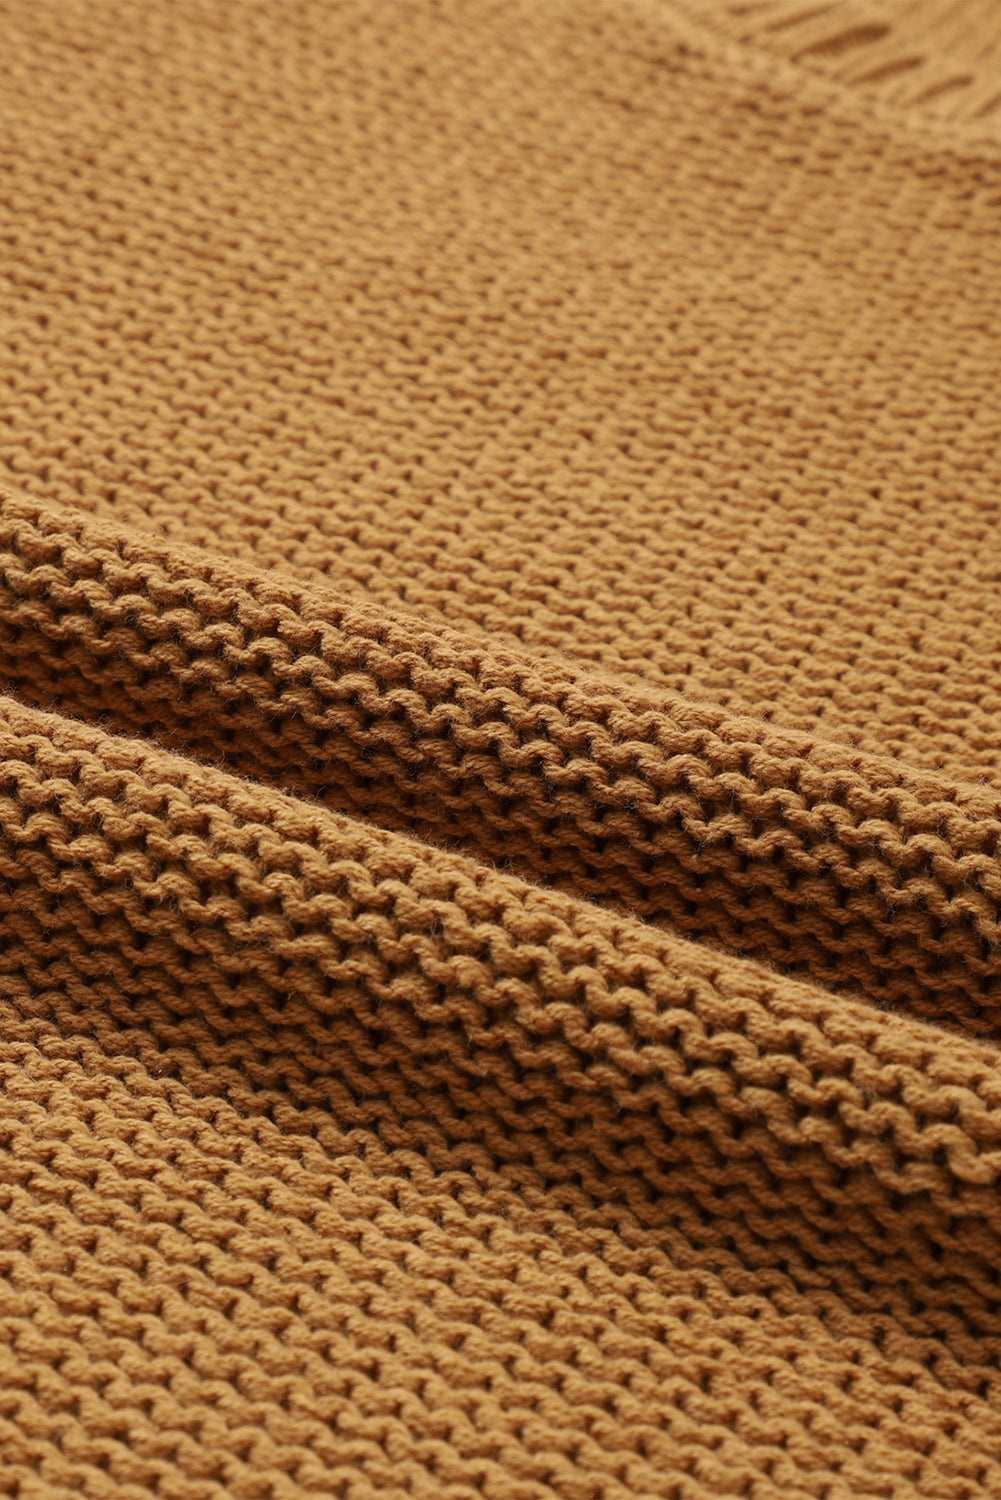 Rjav ohlapen pleten pulover s slouchy teksturo